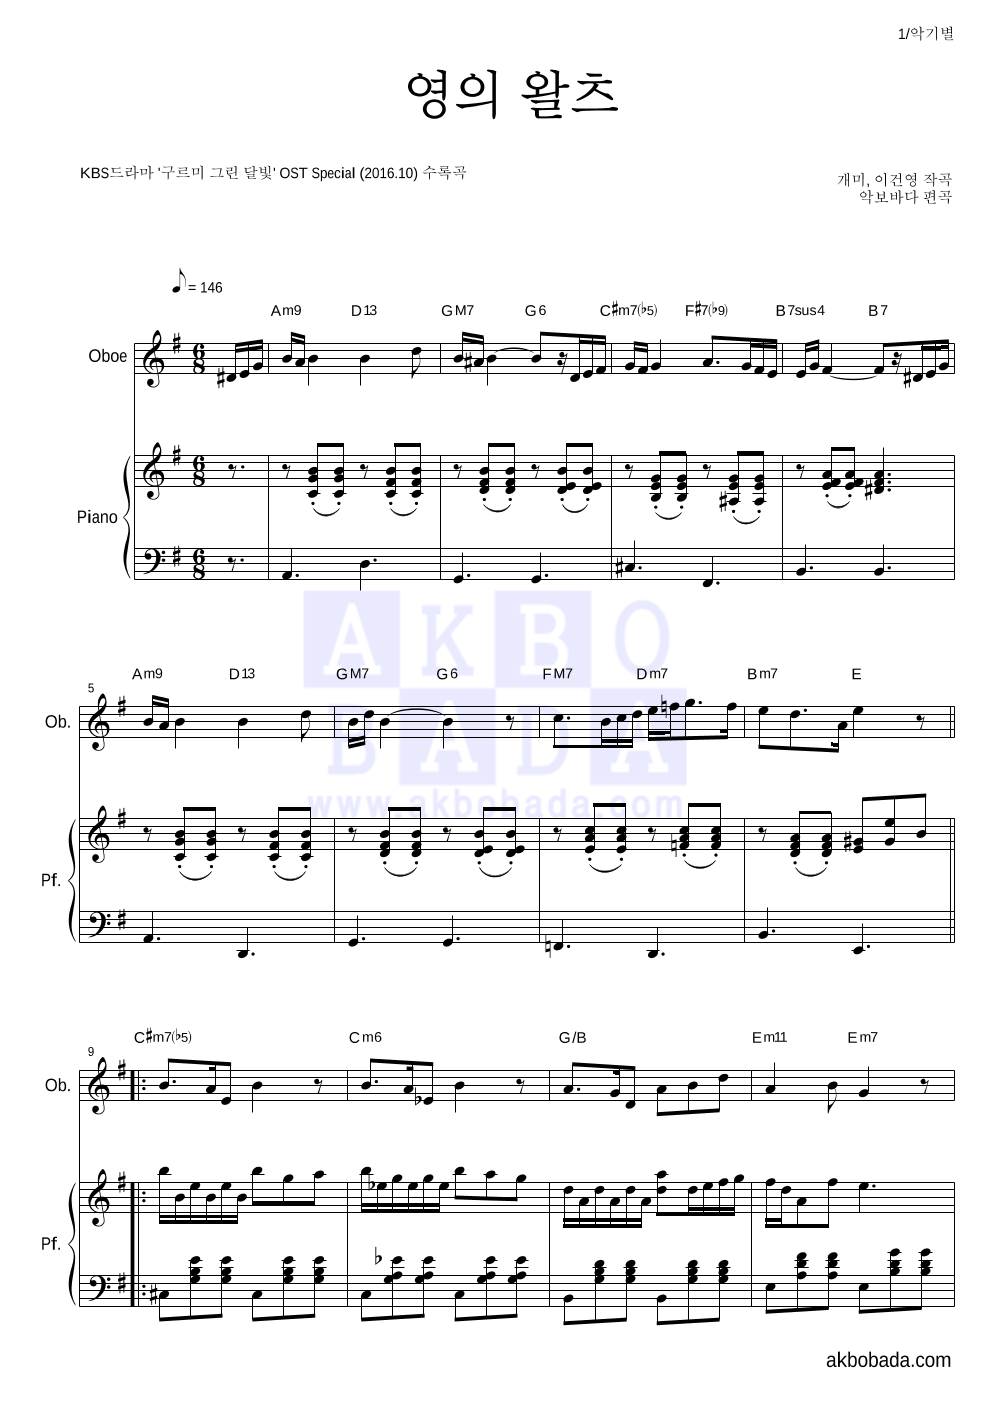 구르미 그린 달빛 OST - 영의 왈츠 오보에&피아노 악보 